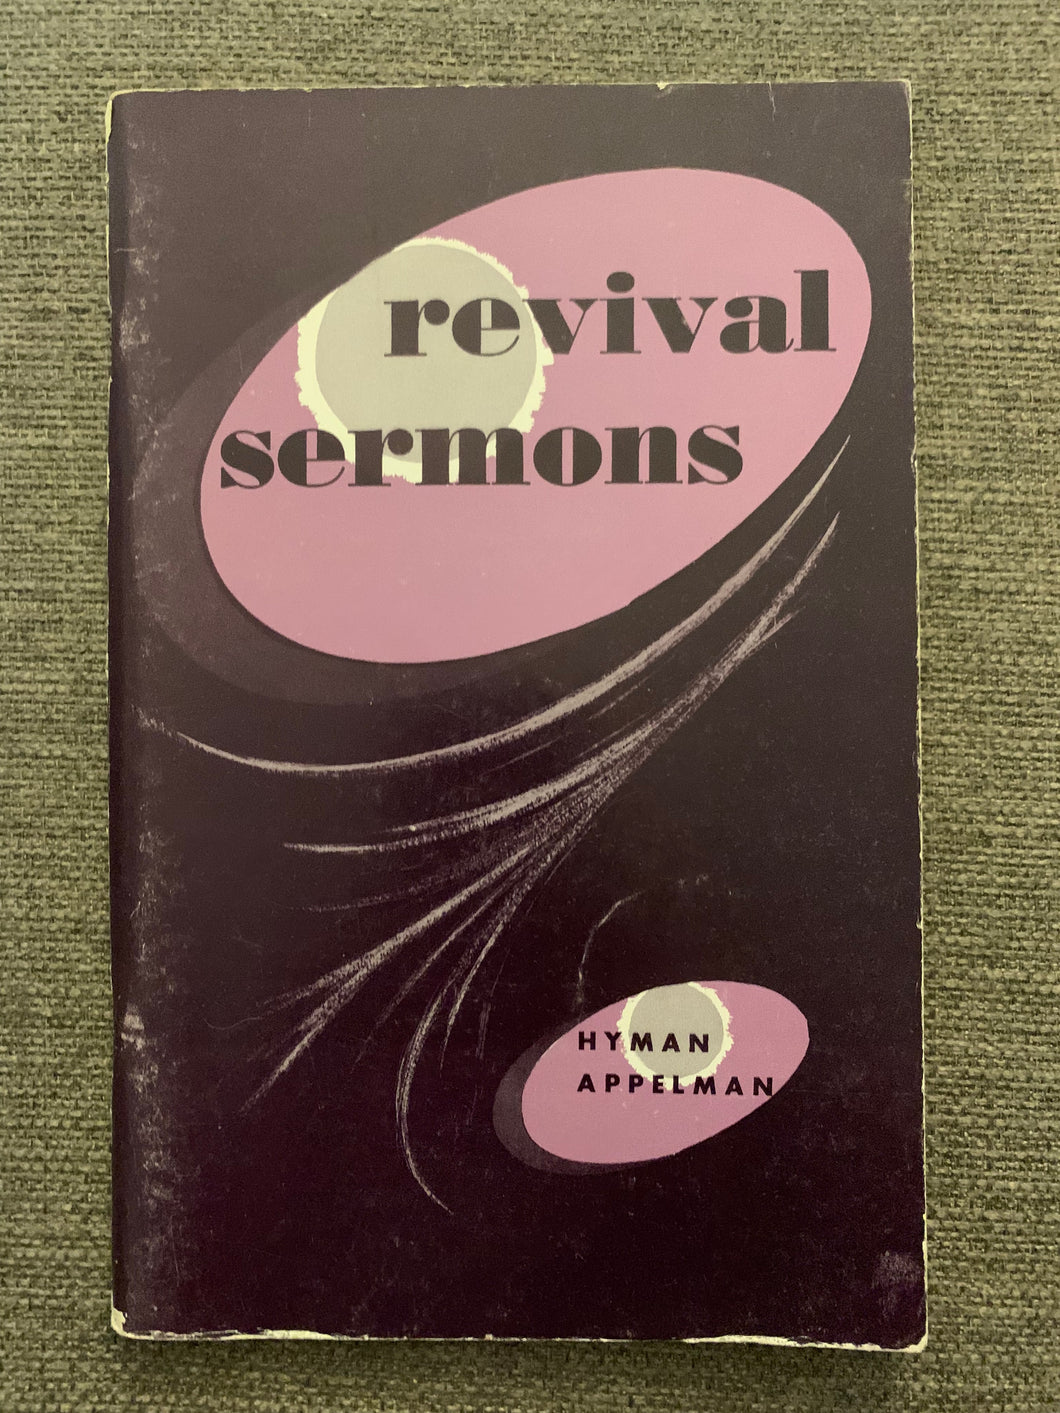 Revival Sermons by Hyman Appelman